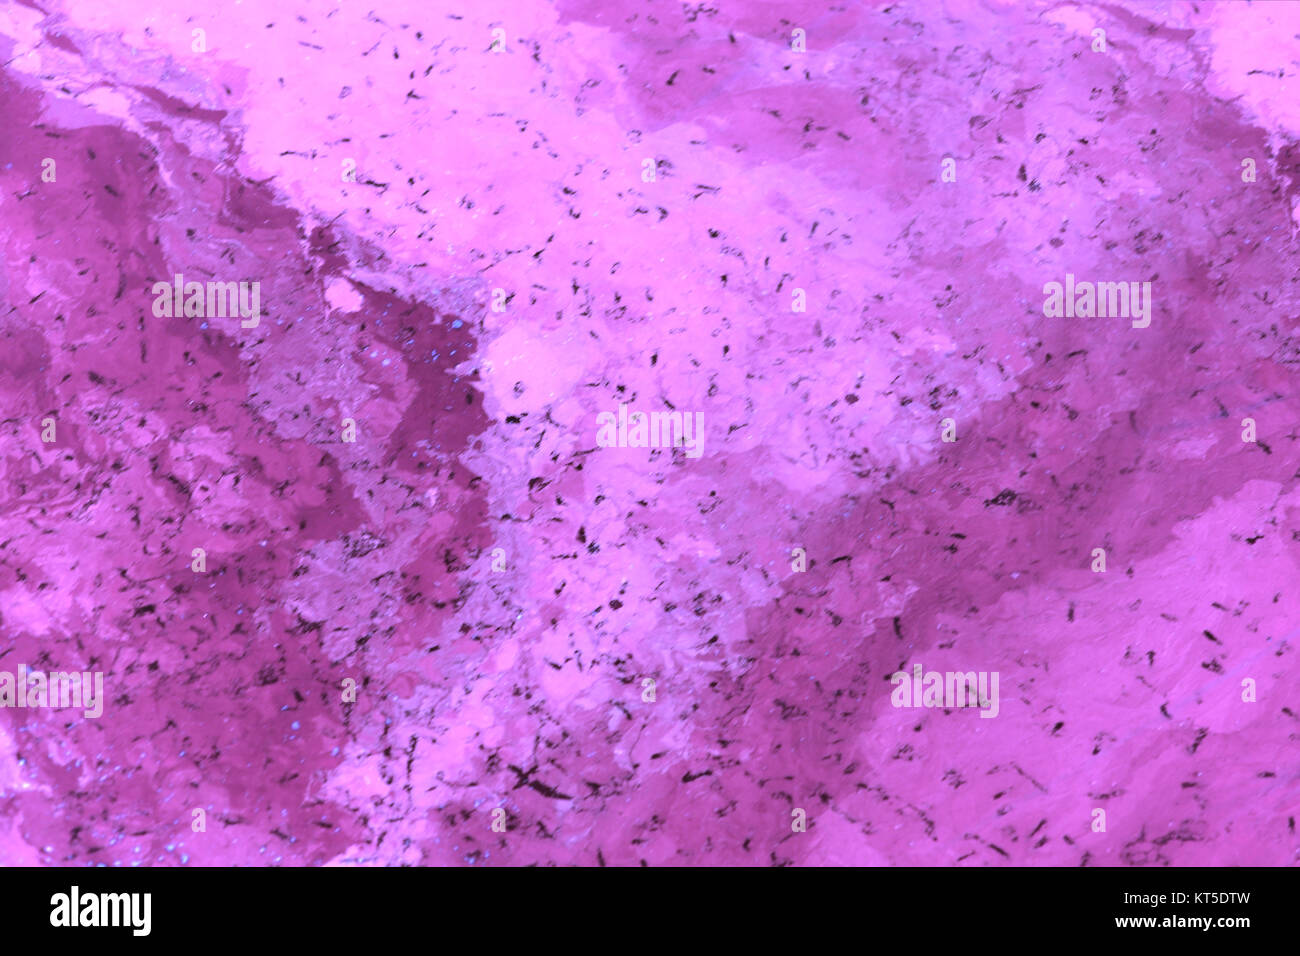 Effetto Marmo texture di sfondo vibrante viola forti colori soft con marcature nere Foto Stock